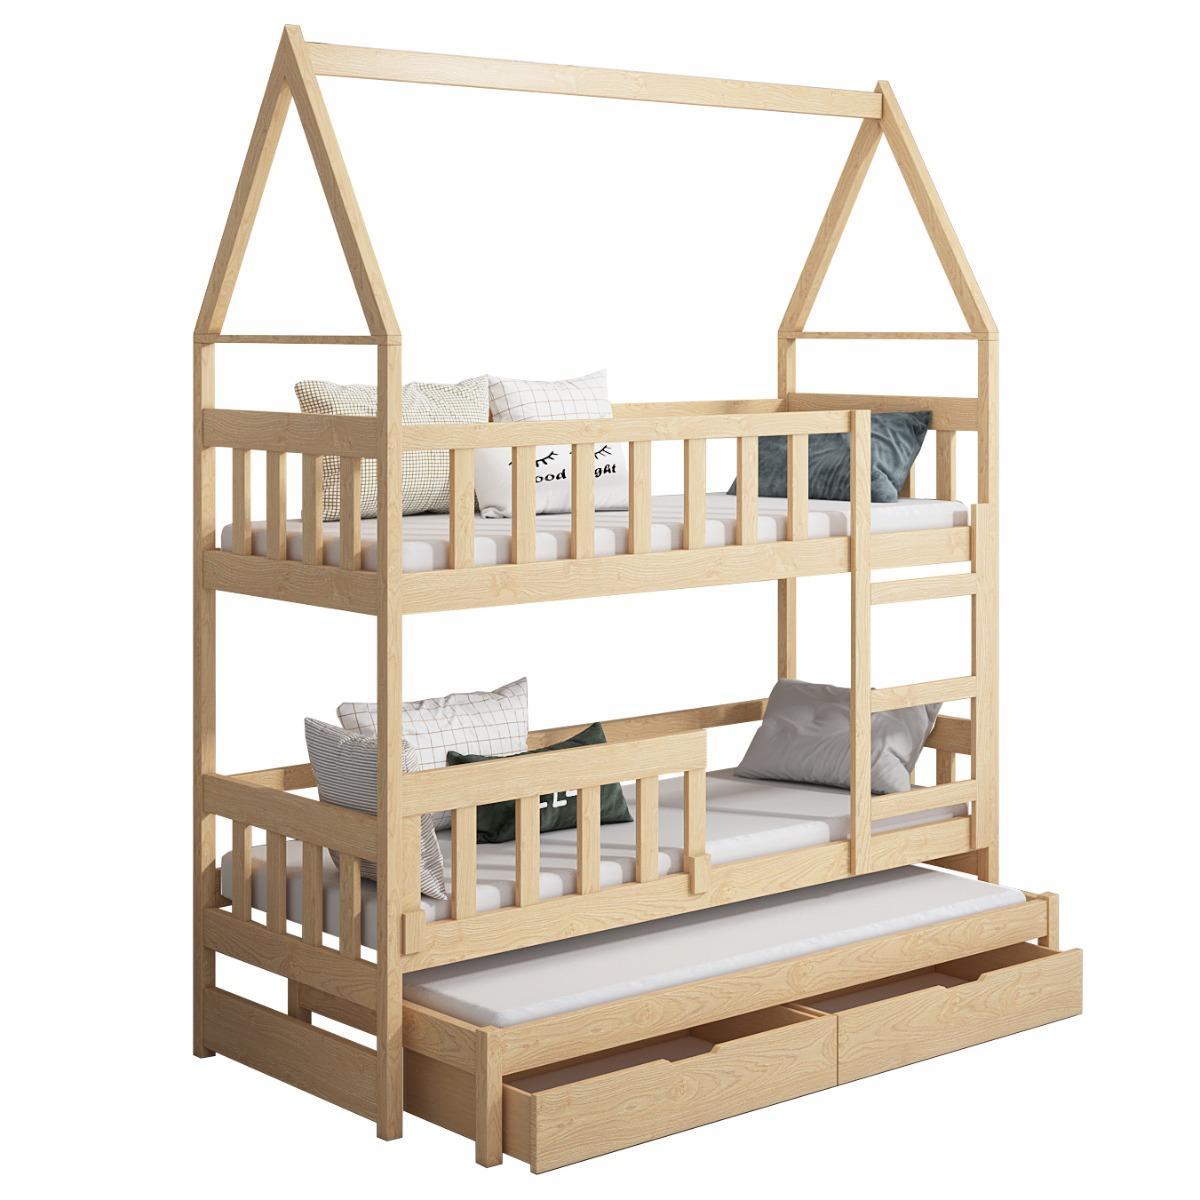 Łóżko piętrowe DOMEK drewno białe miejsce do spania dla 3 osób + materace sprężynowe 180x75 cm + barierka dolna do pokoju dziecka 5 Full Screen